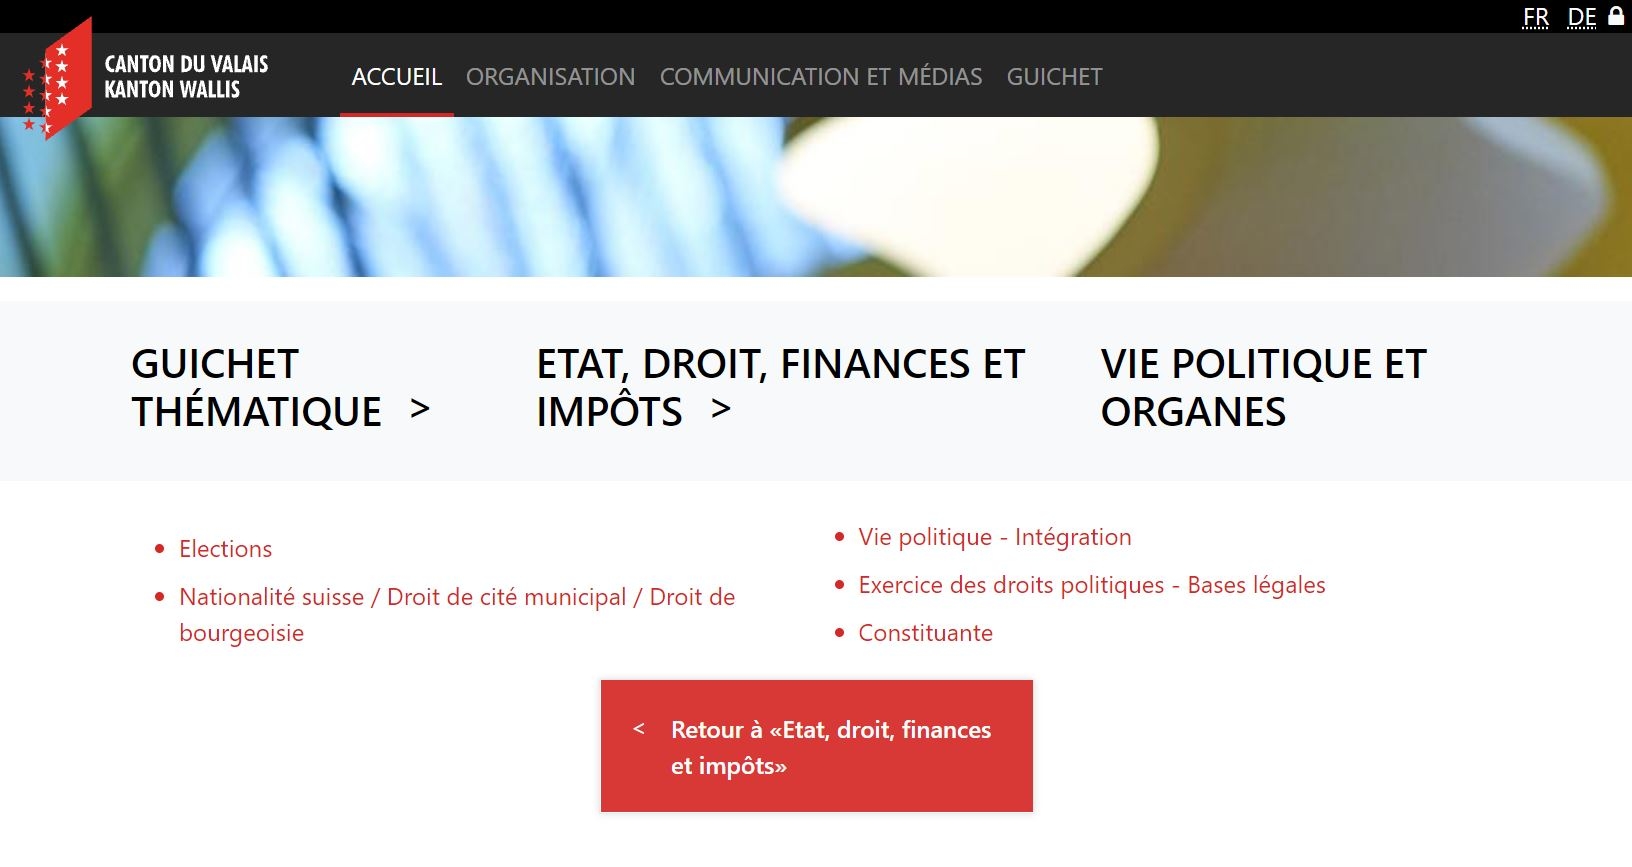 Le site de l'Etat du Valais propose des informations politiques, mais ne permet pas de lancer une pétition en ligne, par exemple.